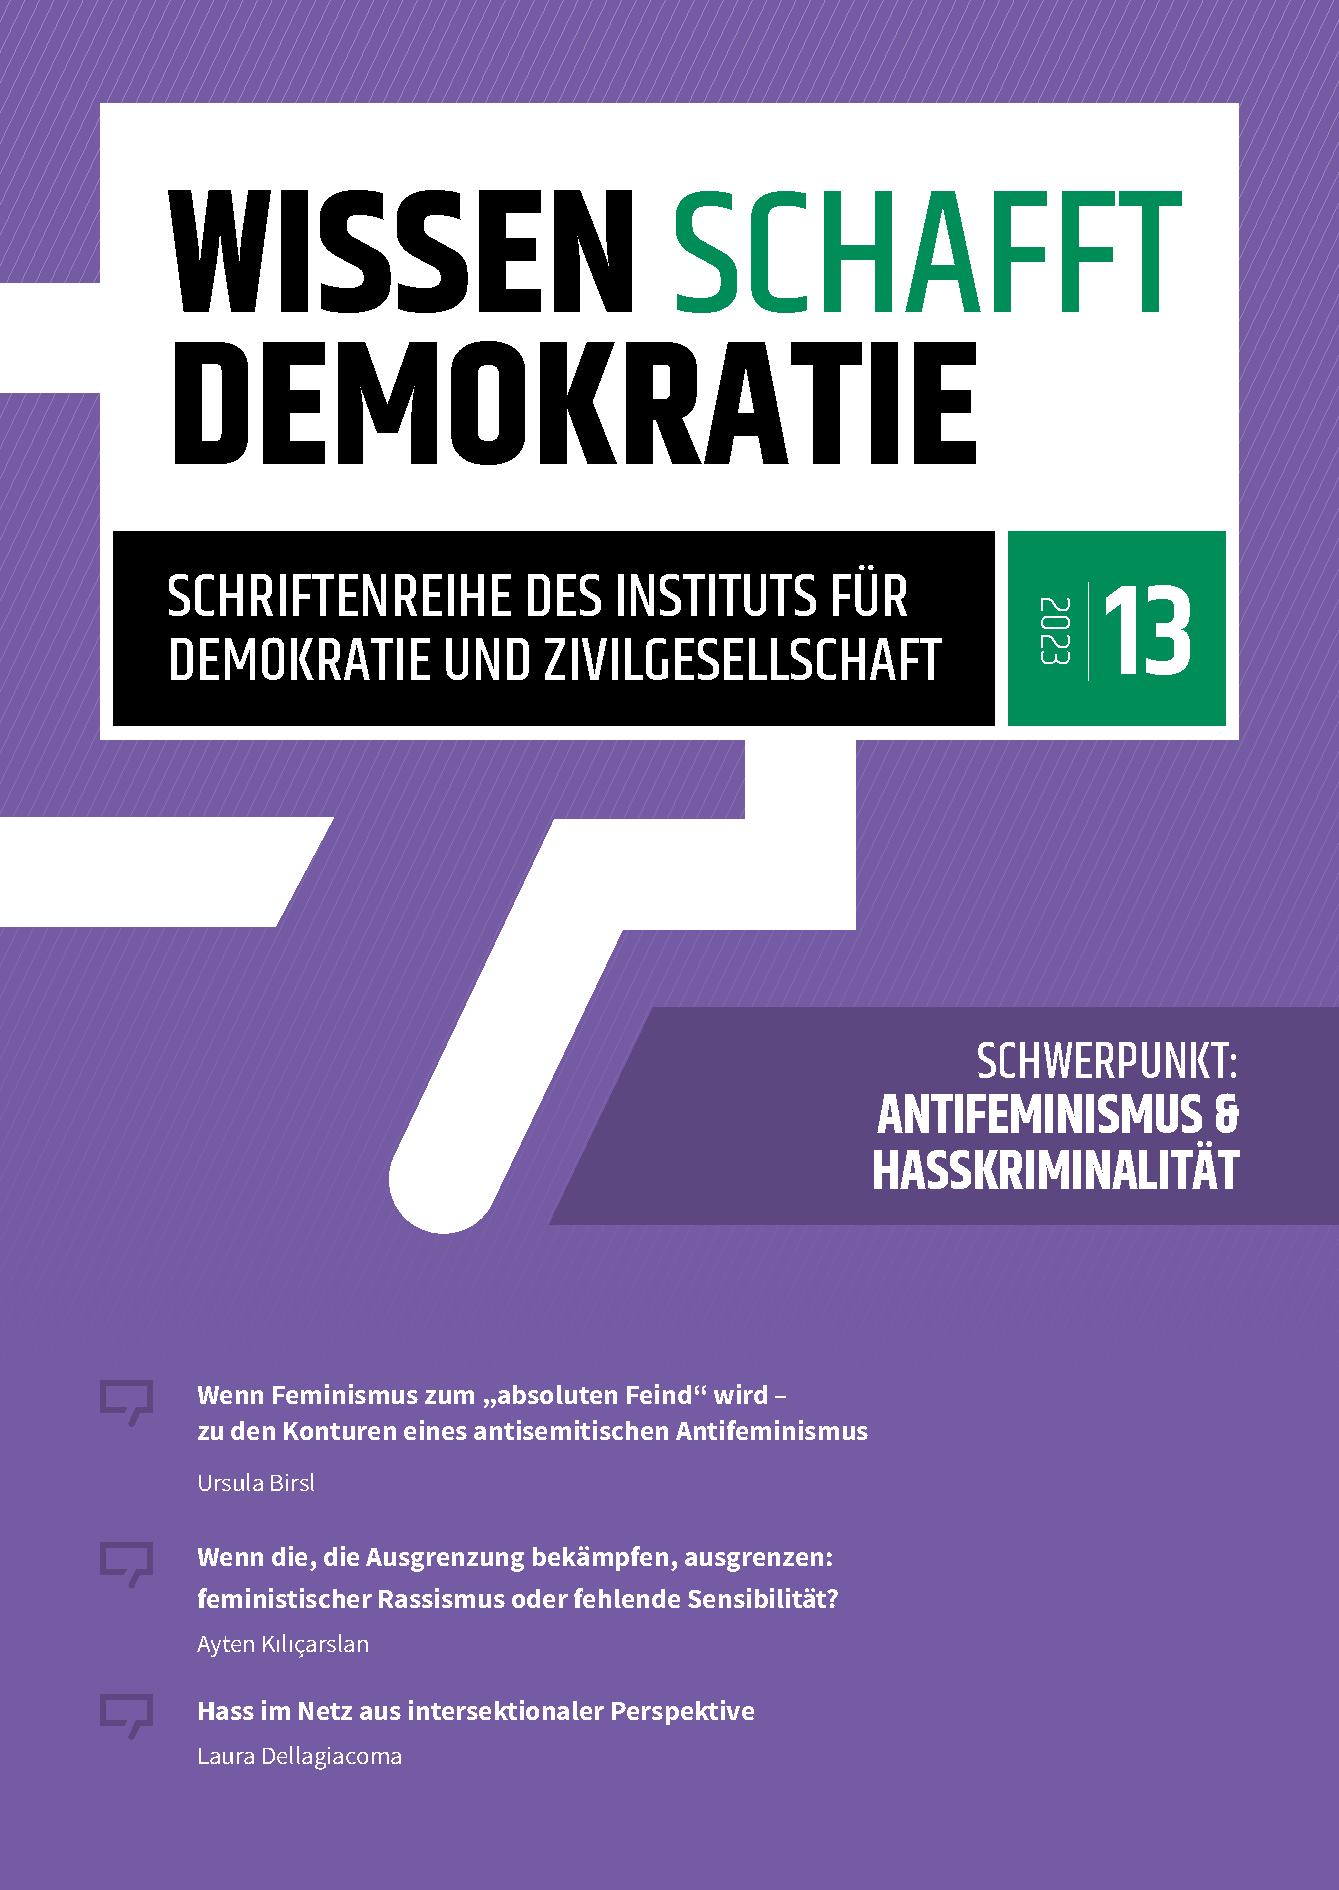 Wissen Schafft Demokratie #13: Antifeminismus & Hasskriminalität